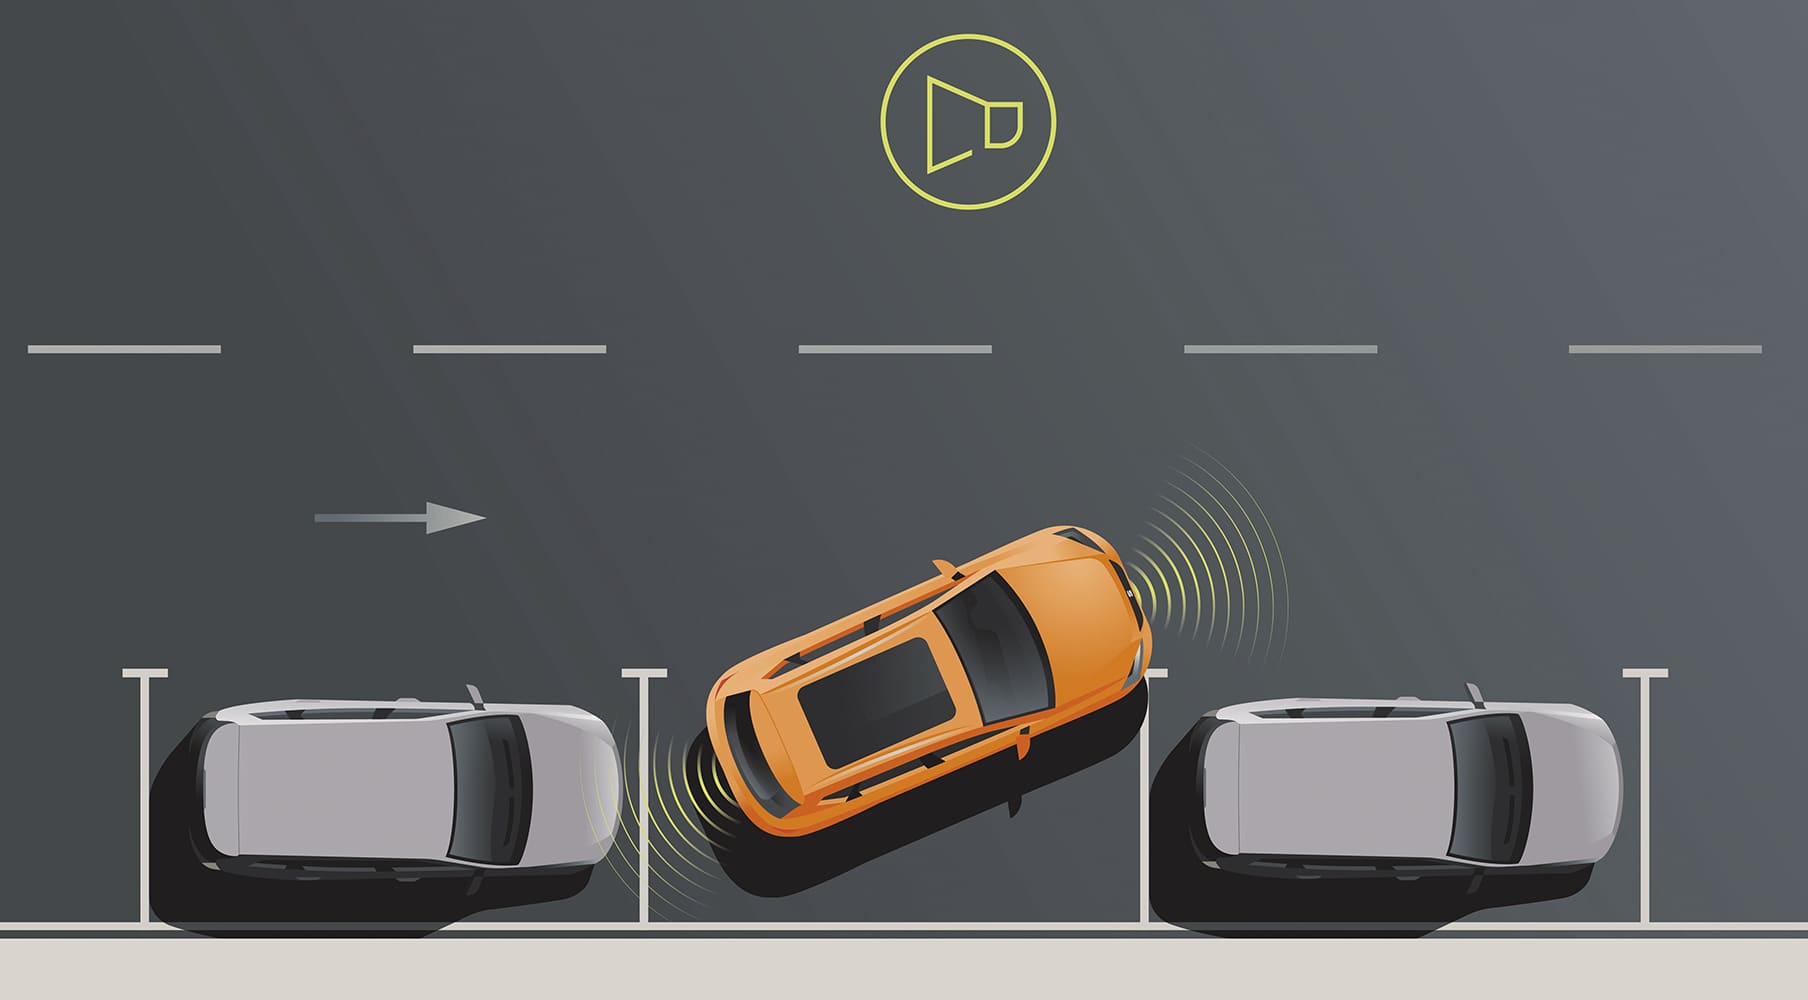 Sensor de aparcamiento delantero y trasero – Términos automovilísticos